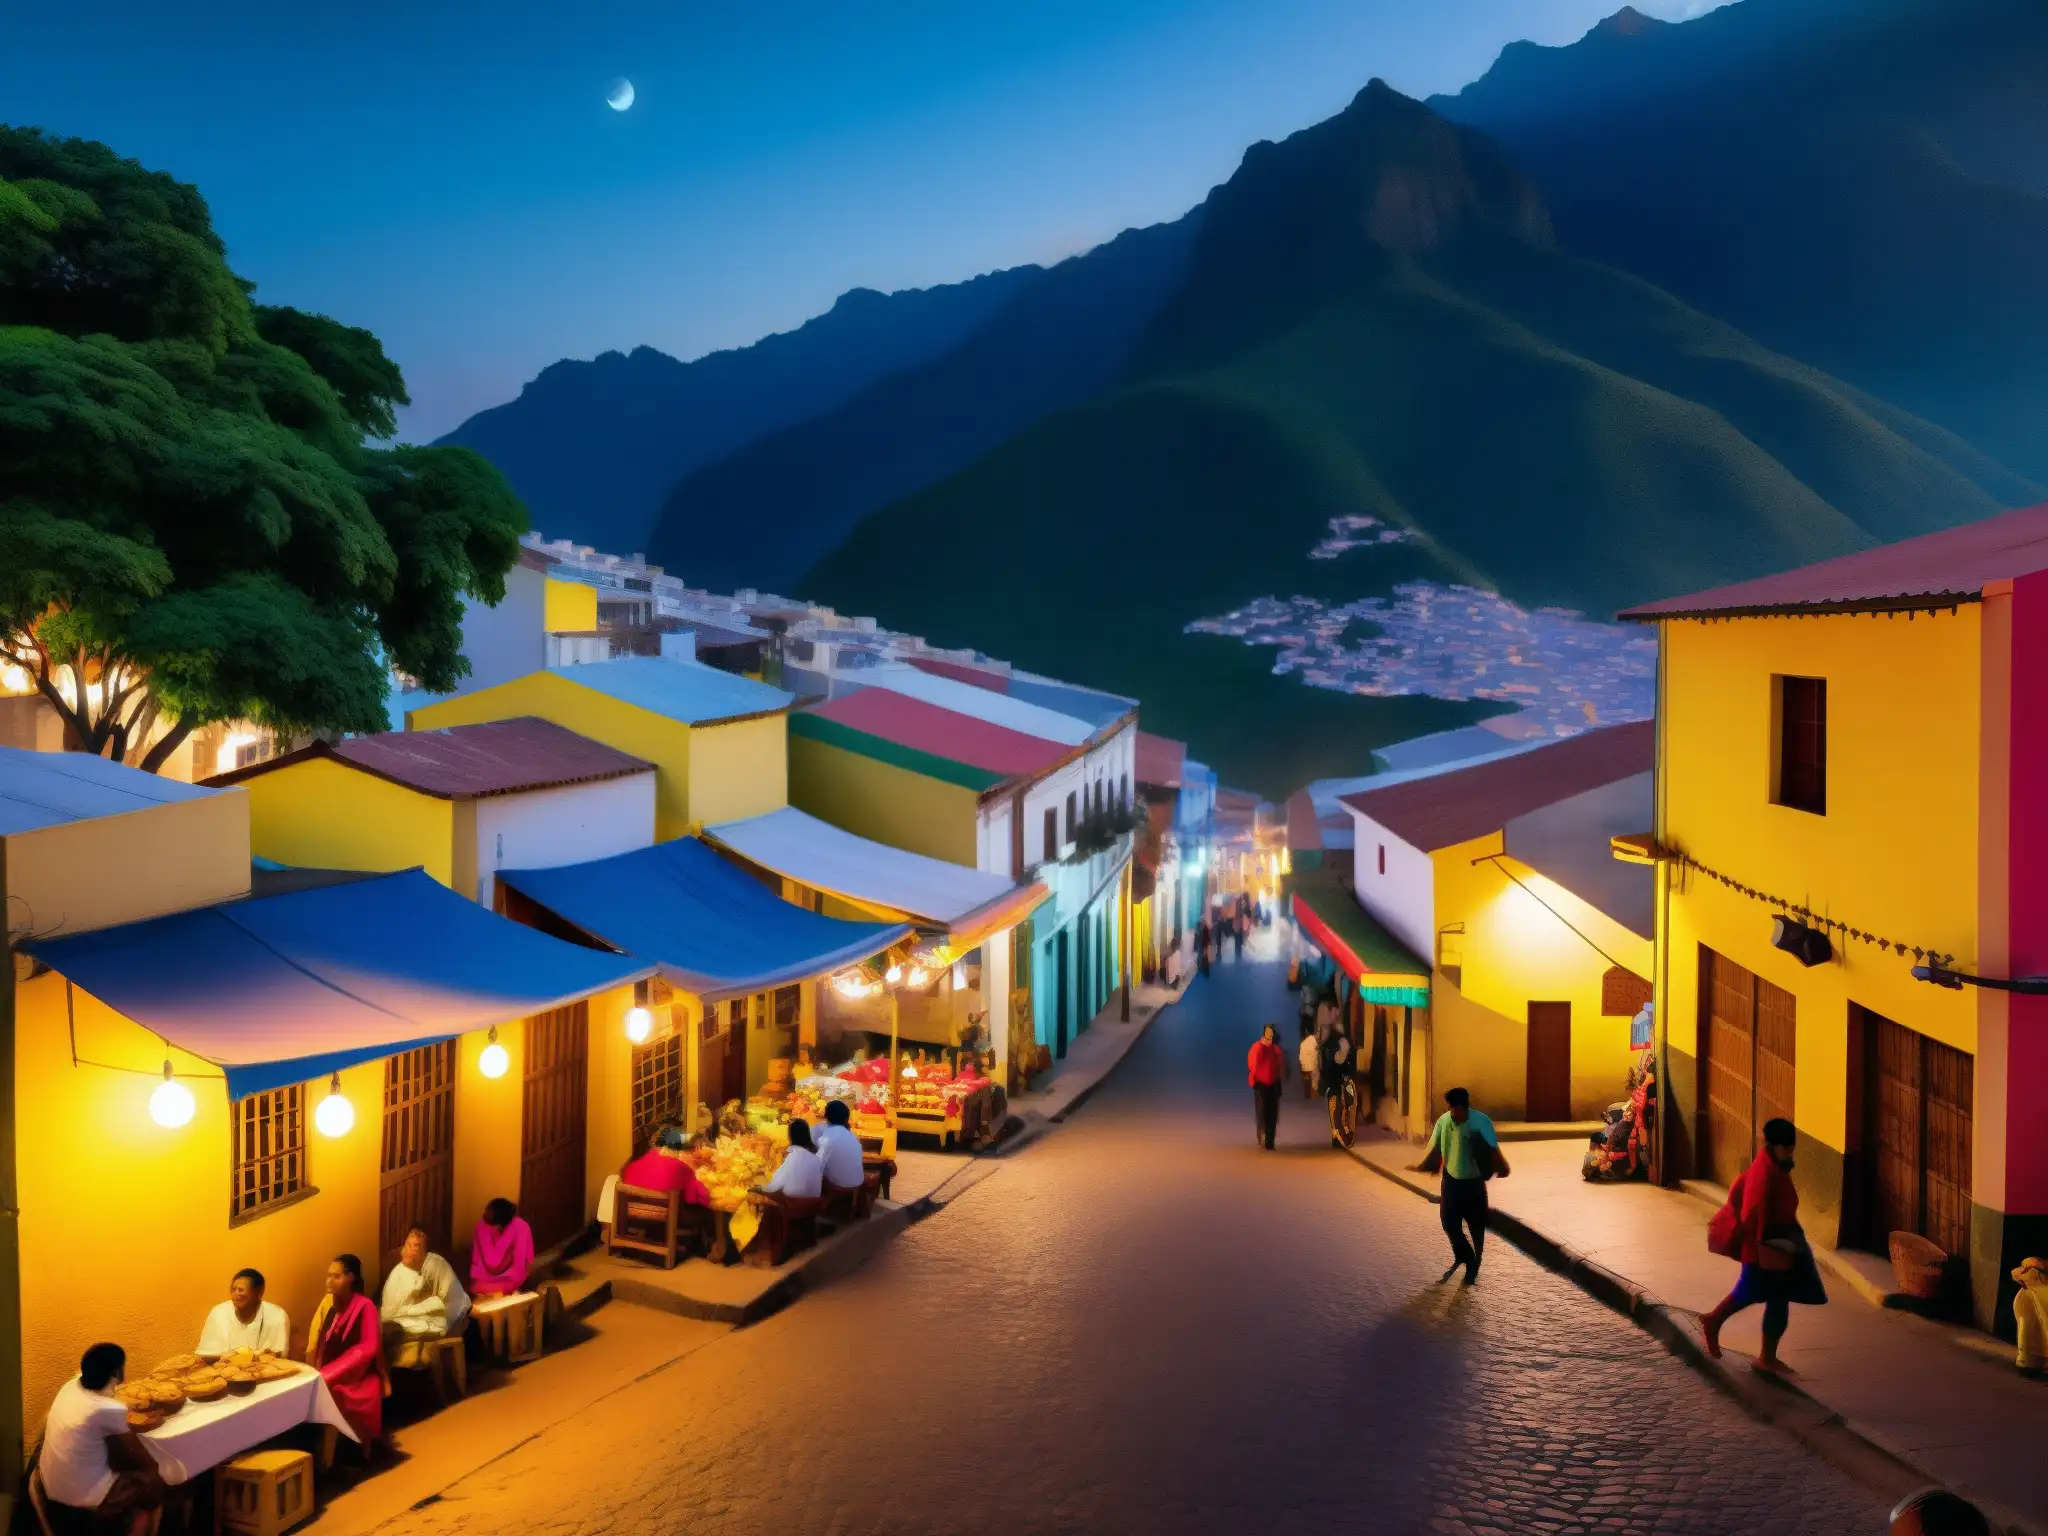 Vibrante noche de ciudad sudamericana, con mitos y leyendas urbanas América del Sur en cada esquina y callejón misterioso